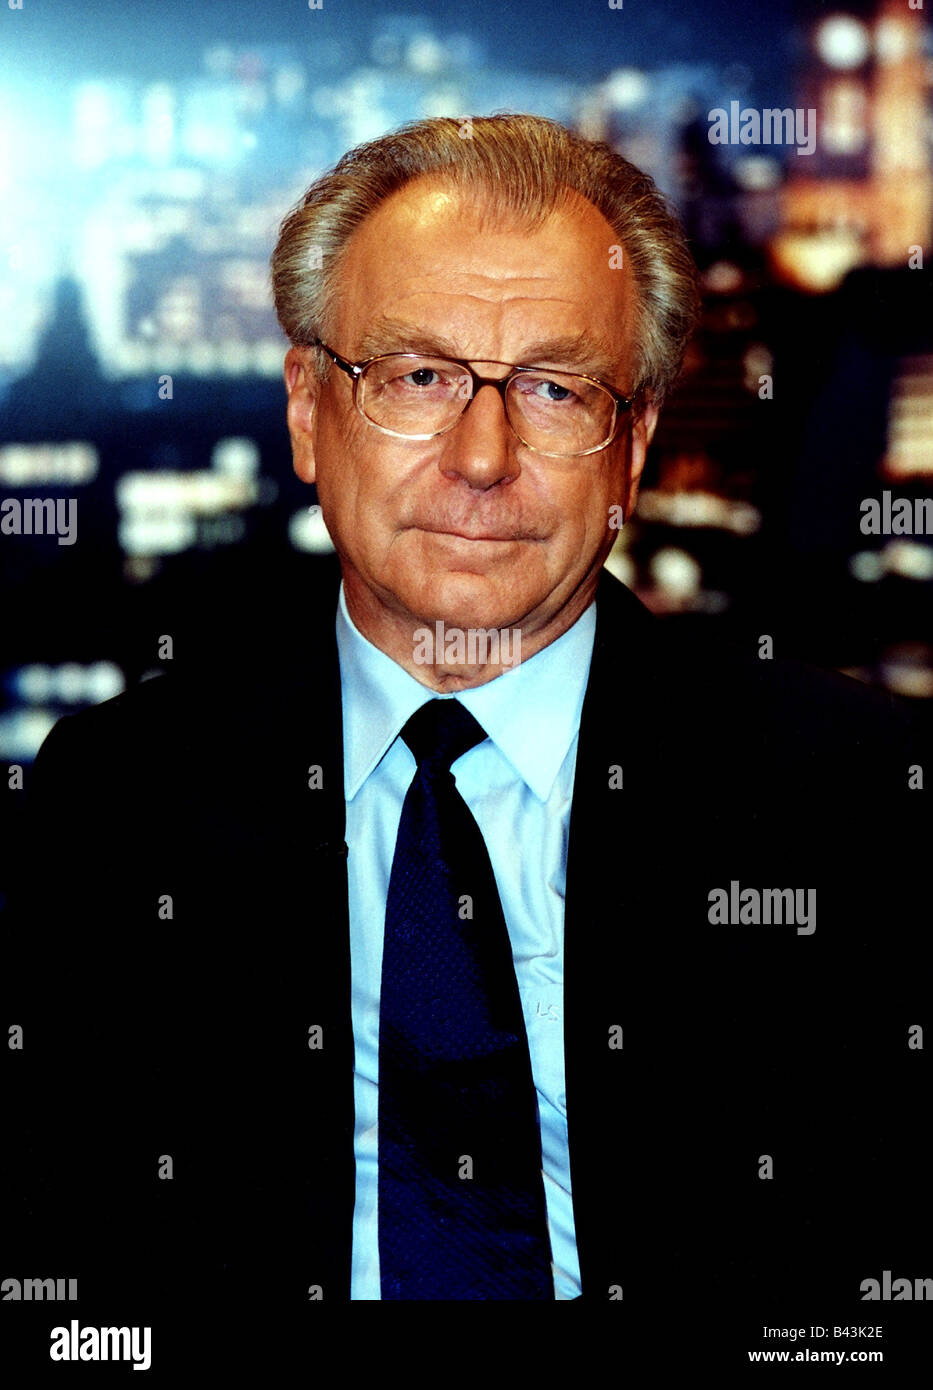 Spaeth, Lothar, 16.11.1937 - 18.3.2016, German politician (CDU), portrait, 2002, Stock Photo